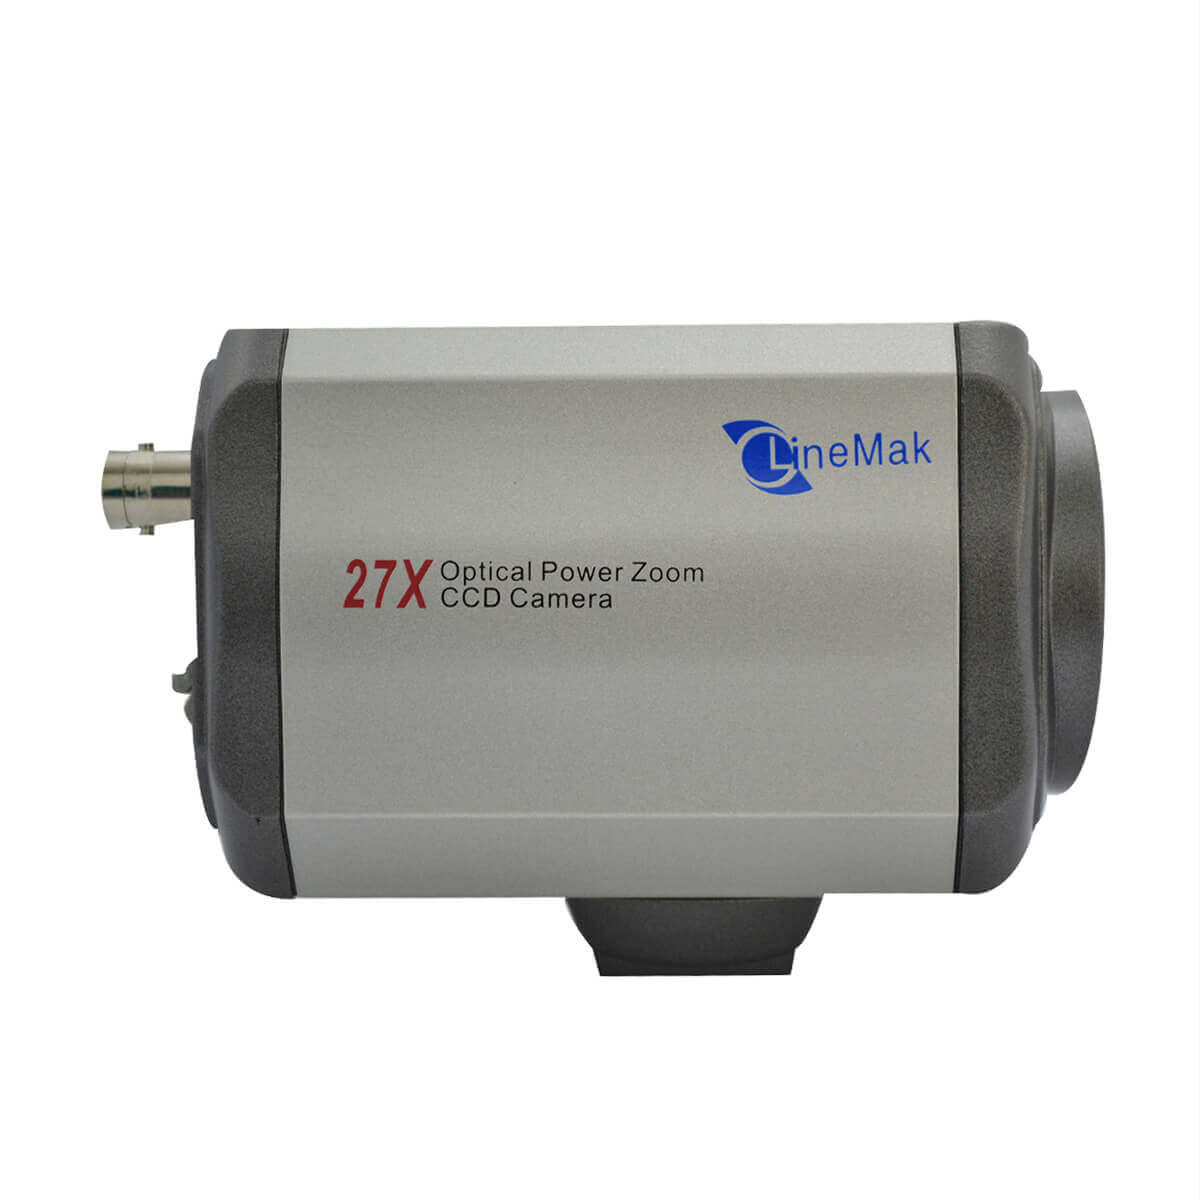 Camara tipo box para PTZ, Sensor CCD SONY, resolución 420TVL, ZOOM 27X